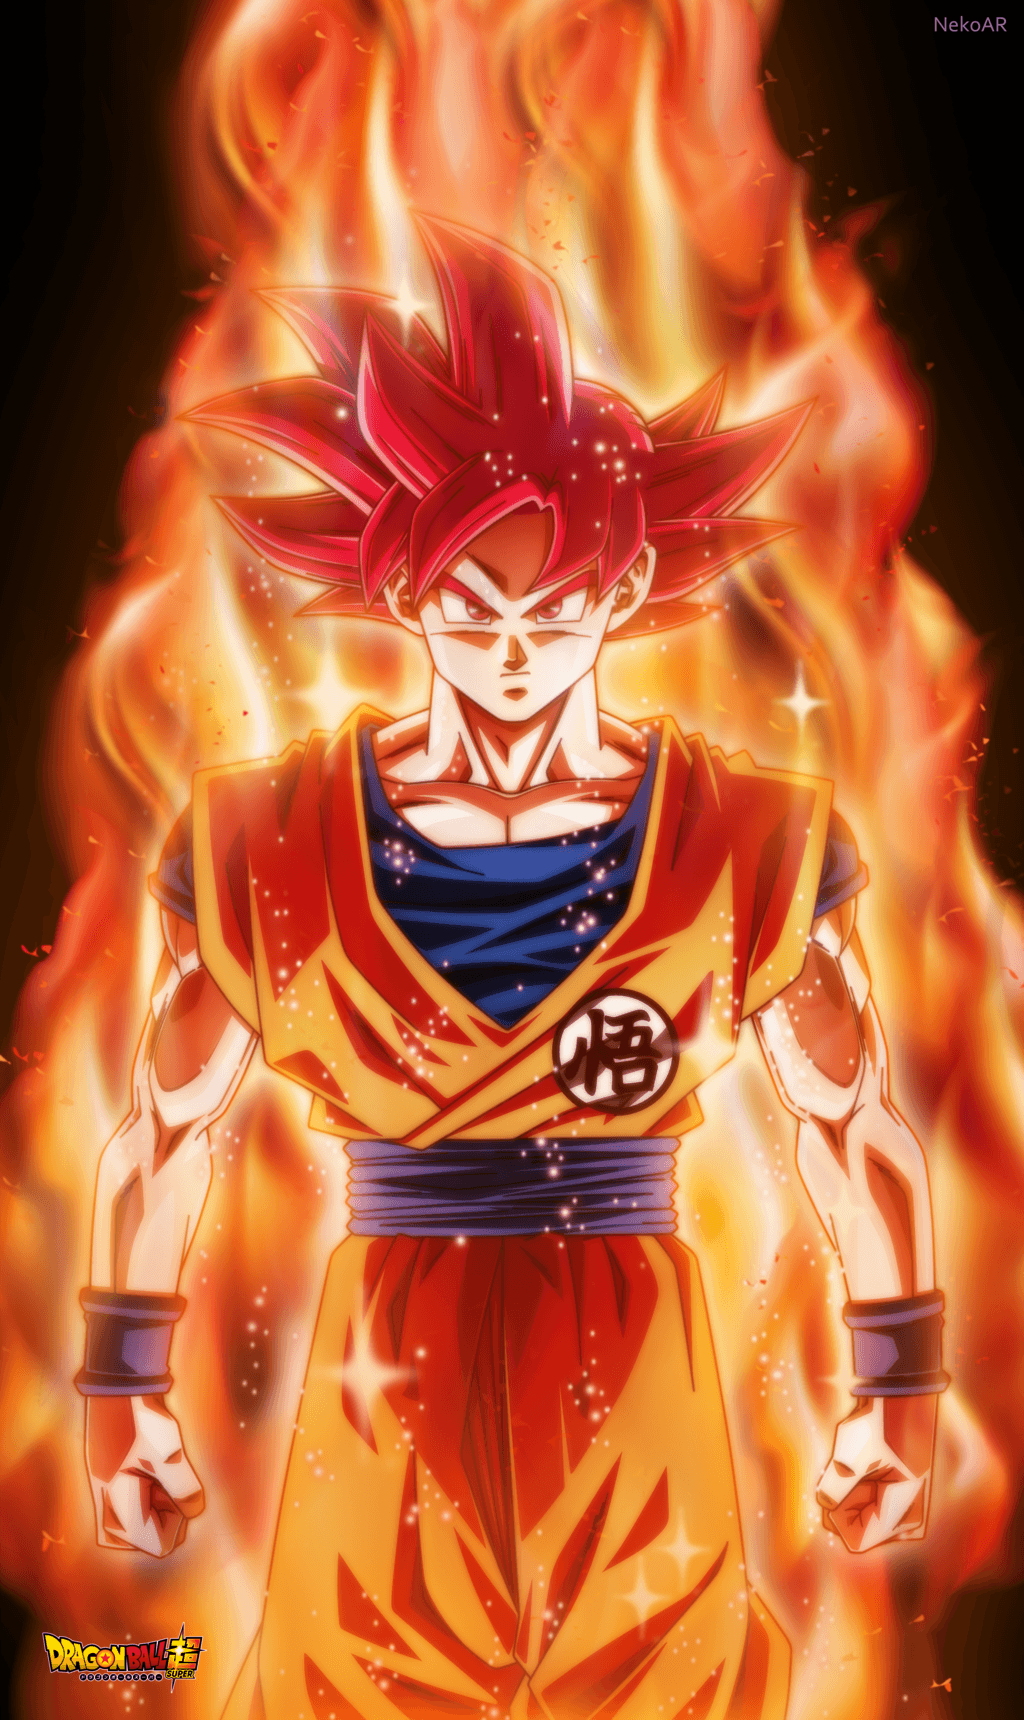 Ssj God Goku Wallpapers - Top Free Ssj God Goku Backgrounds ...